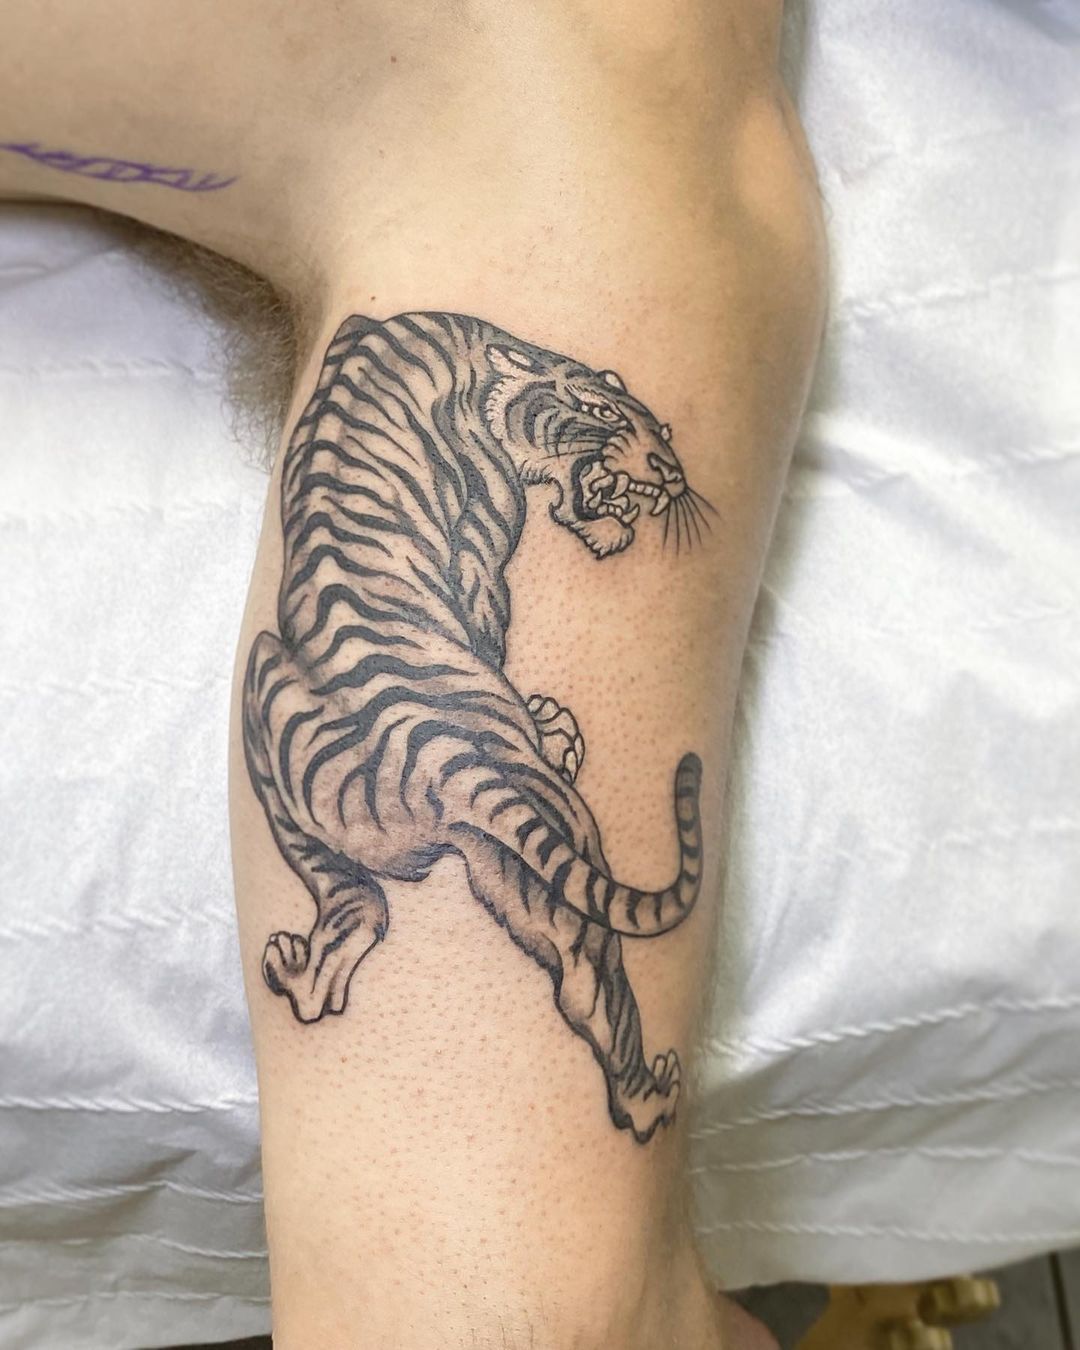 Crawling tiger - Hardy style #tattoo #dfwtattoos #dfw #arlington #dallas  #fortworth #sleevetattoo #tattooshop #americantraditional #tig... |  Instagram